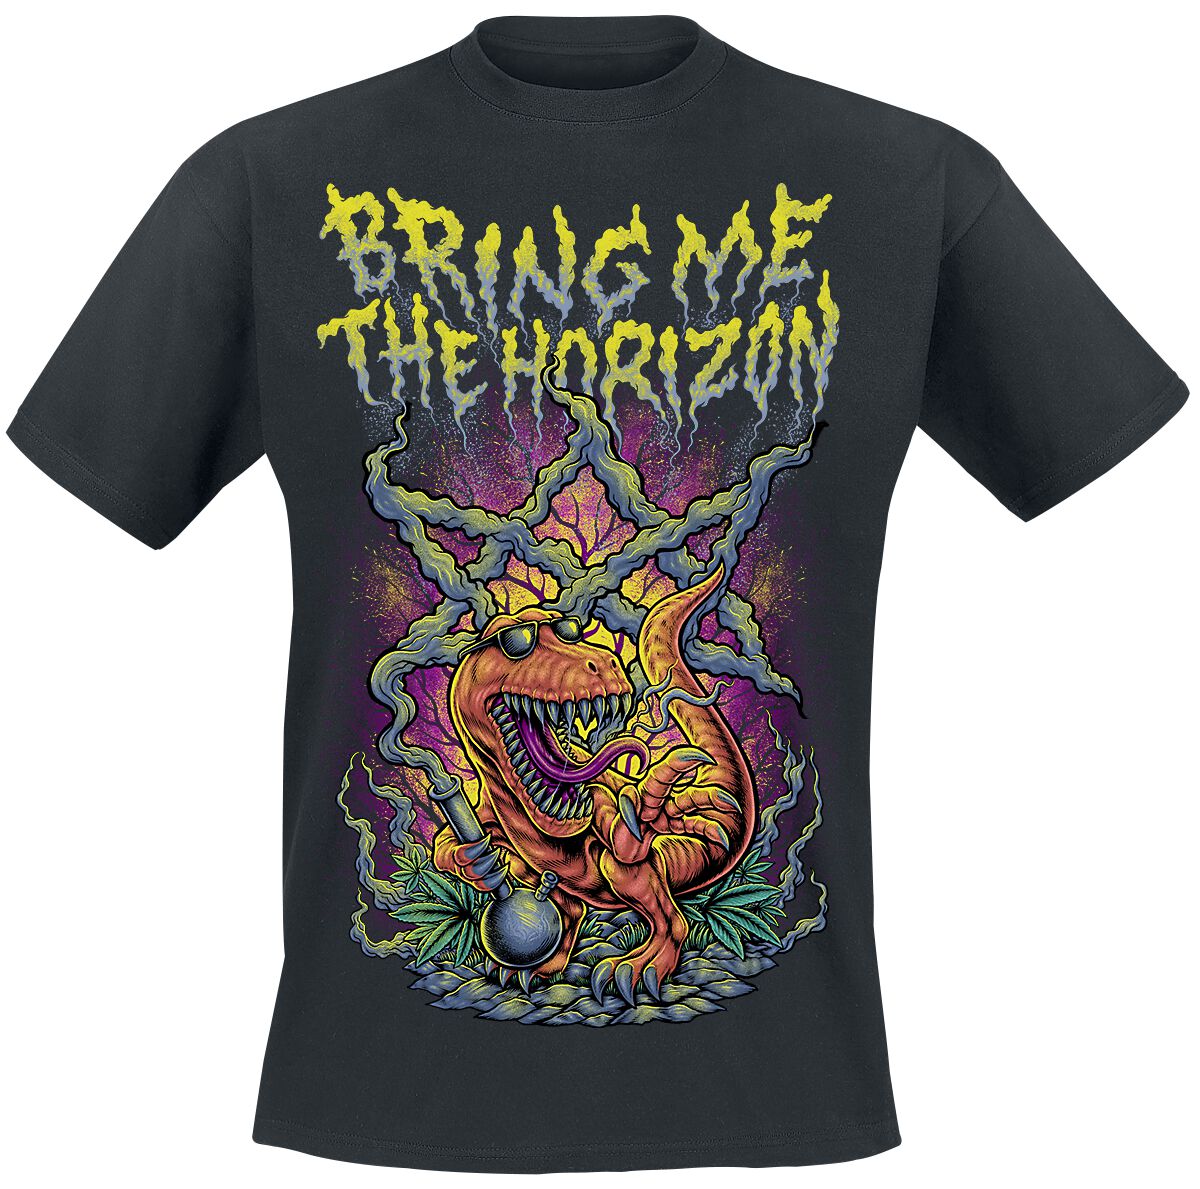 Bring Me The Horizon T-Shirt - Smoking Dinosaur - S bis XXL - für Männer - Größe M - schwarz  - Lizenziertes Merchandise!